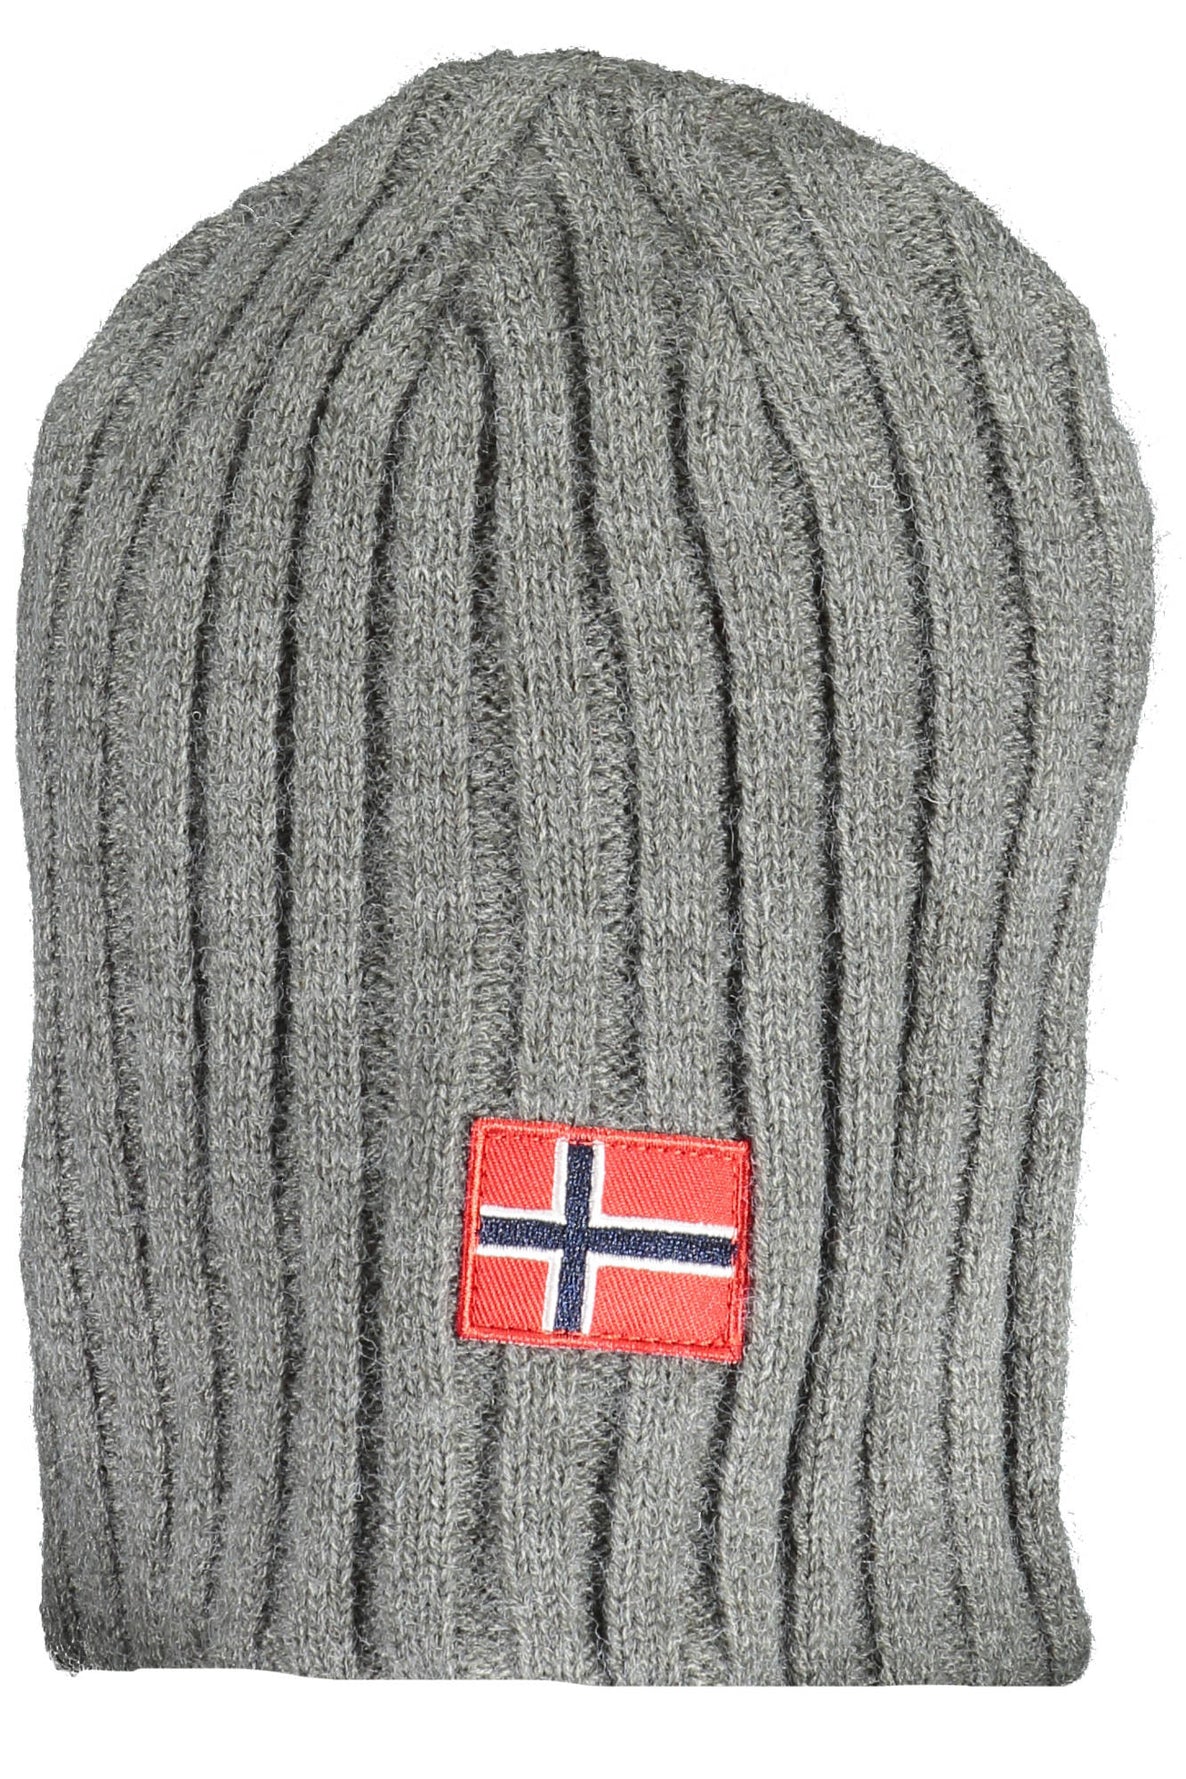 NORWAY 1963